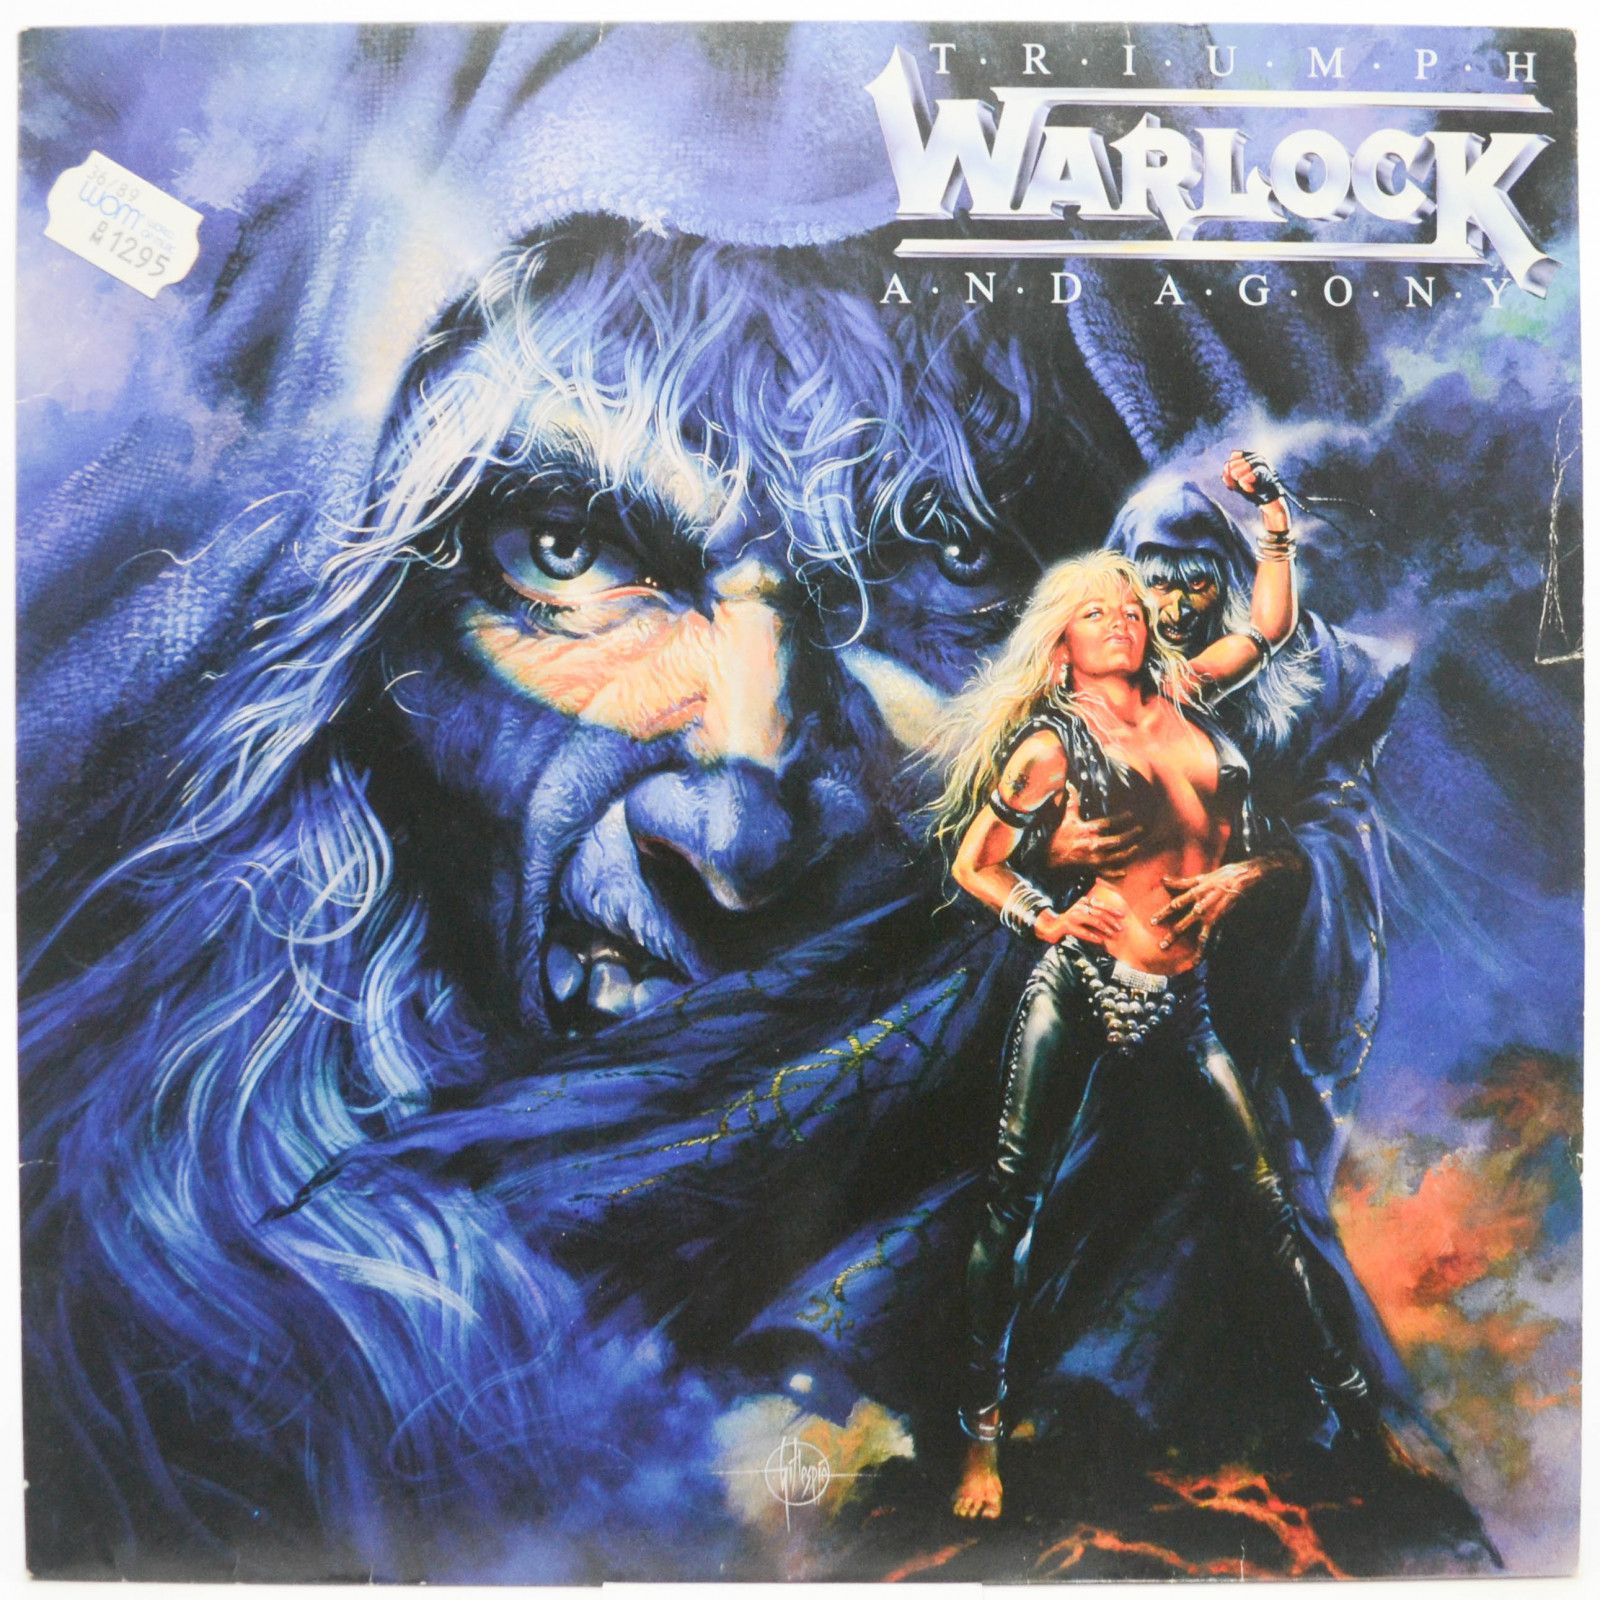 Warlock — Triumph And Agony, 1987